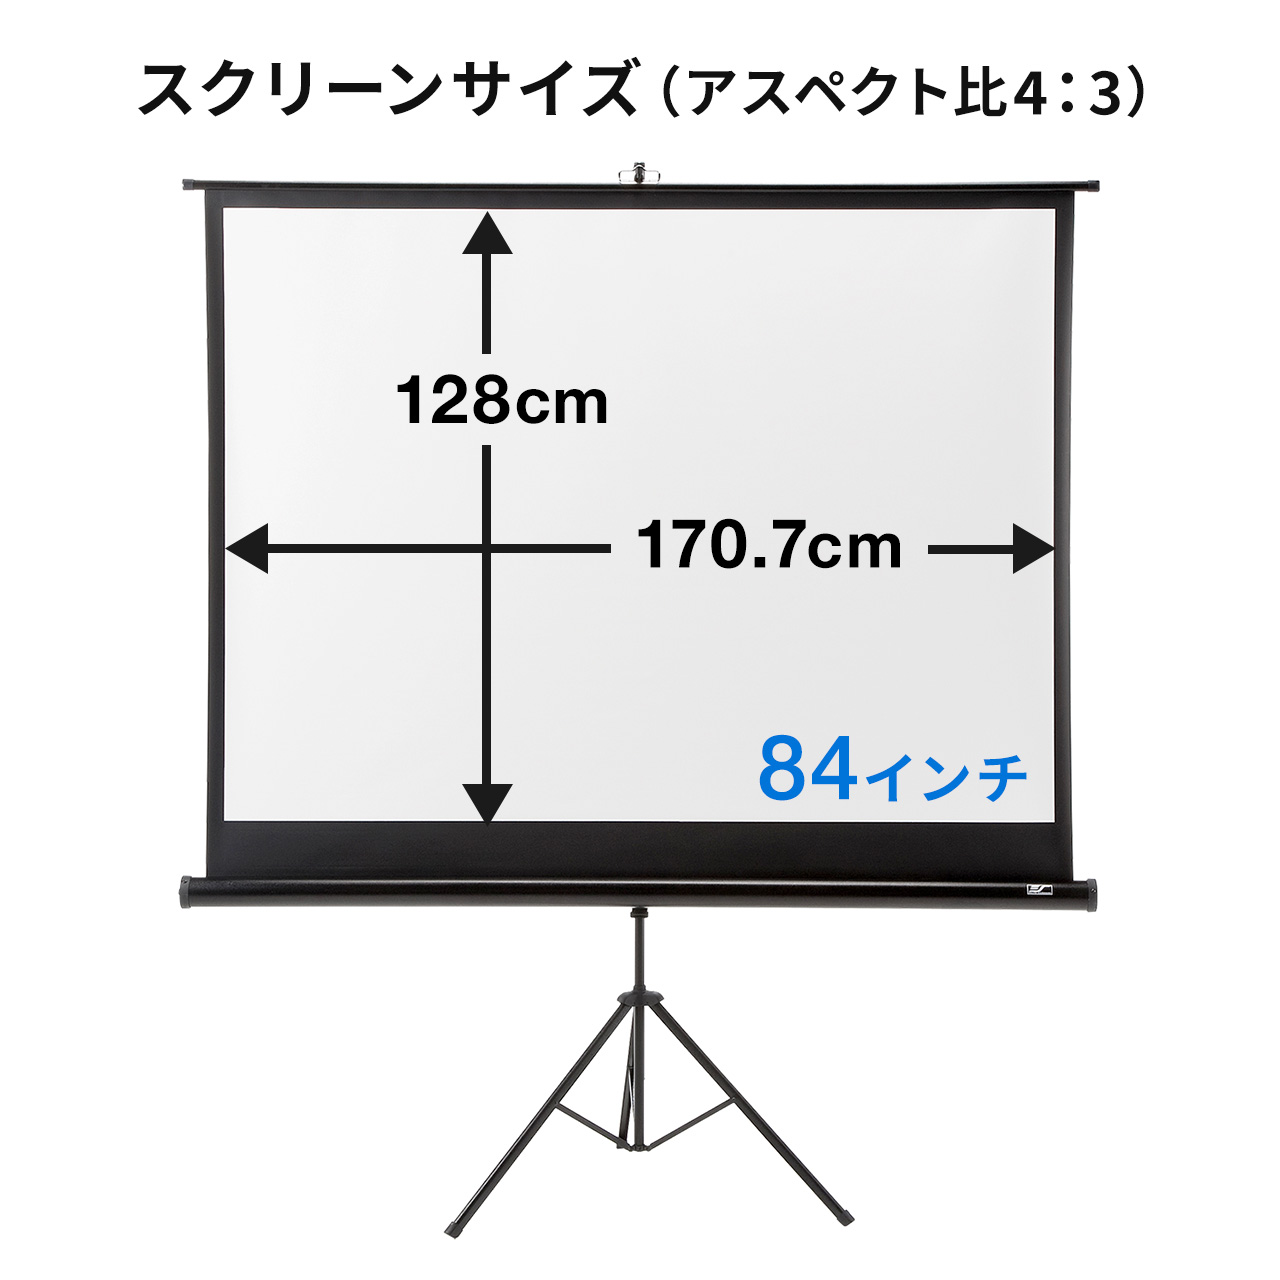 プロジェクタースクリーン 84インチ 三脚式 自立式 持ち運び可能 選挙グッズ スクリーンケース付き 102-PRS004SET1